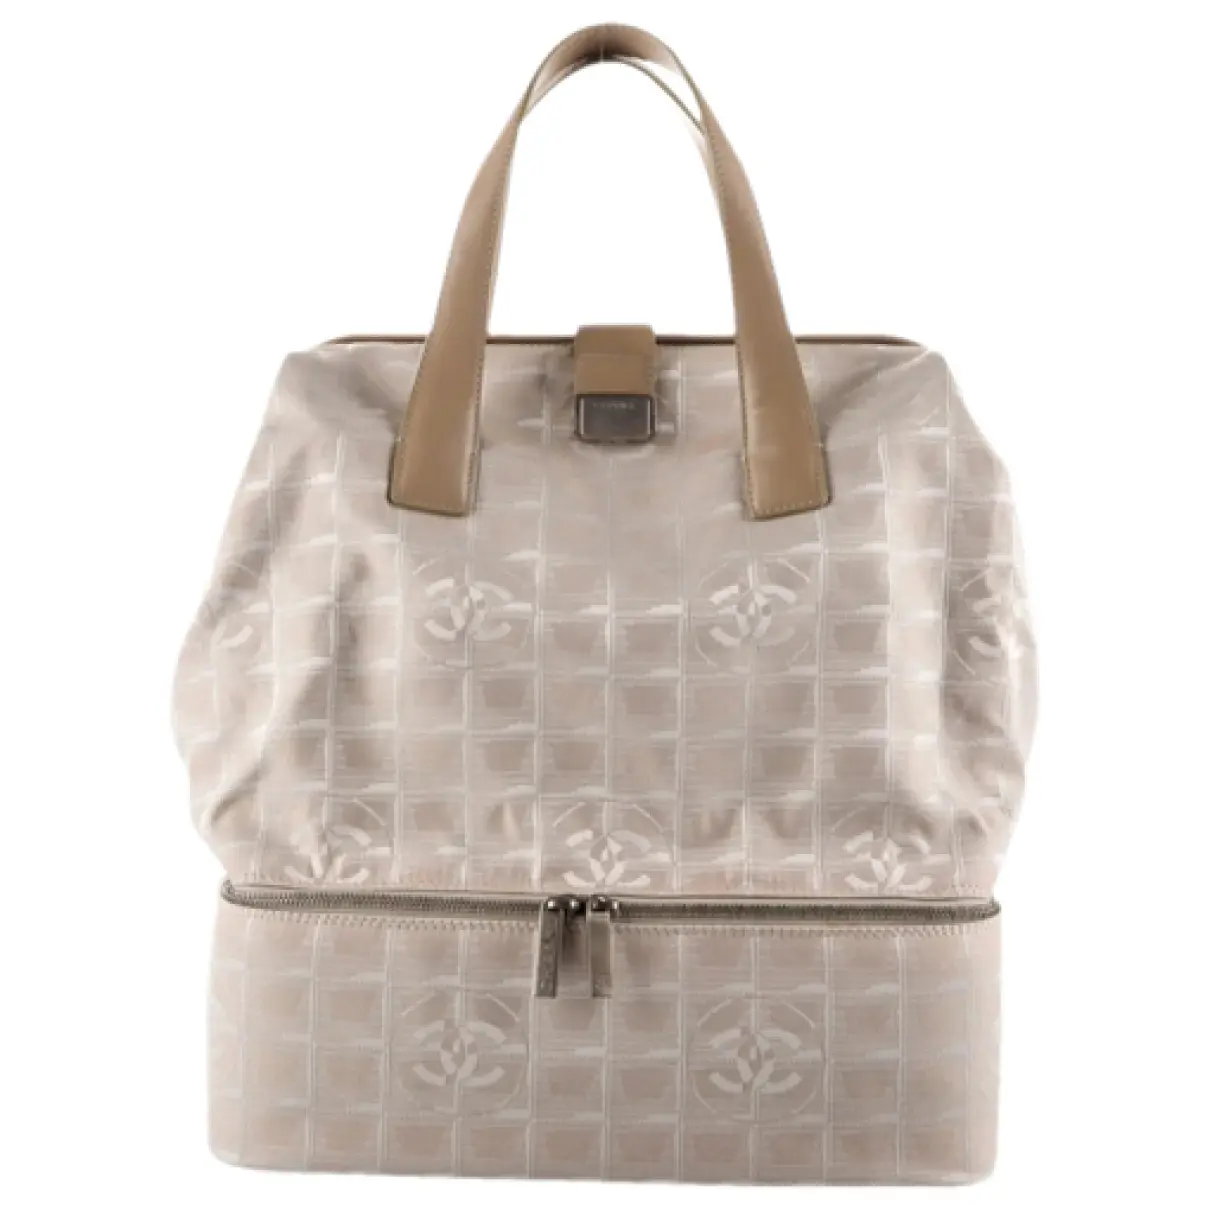 Timeless/Classique cloth handbag